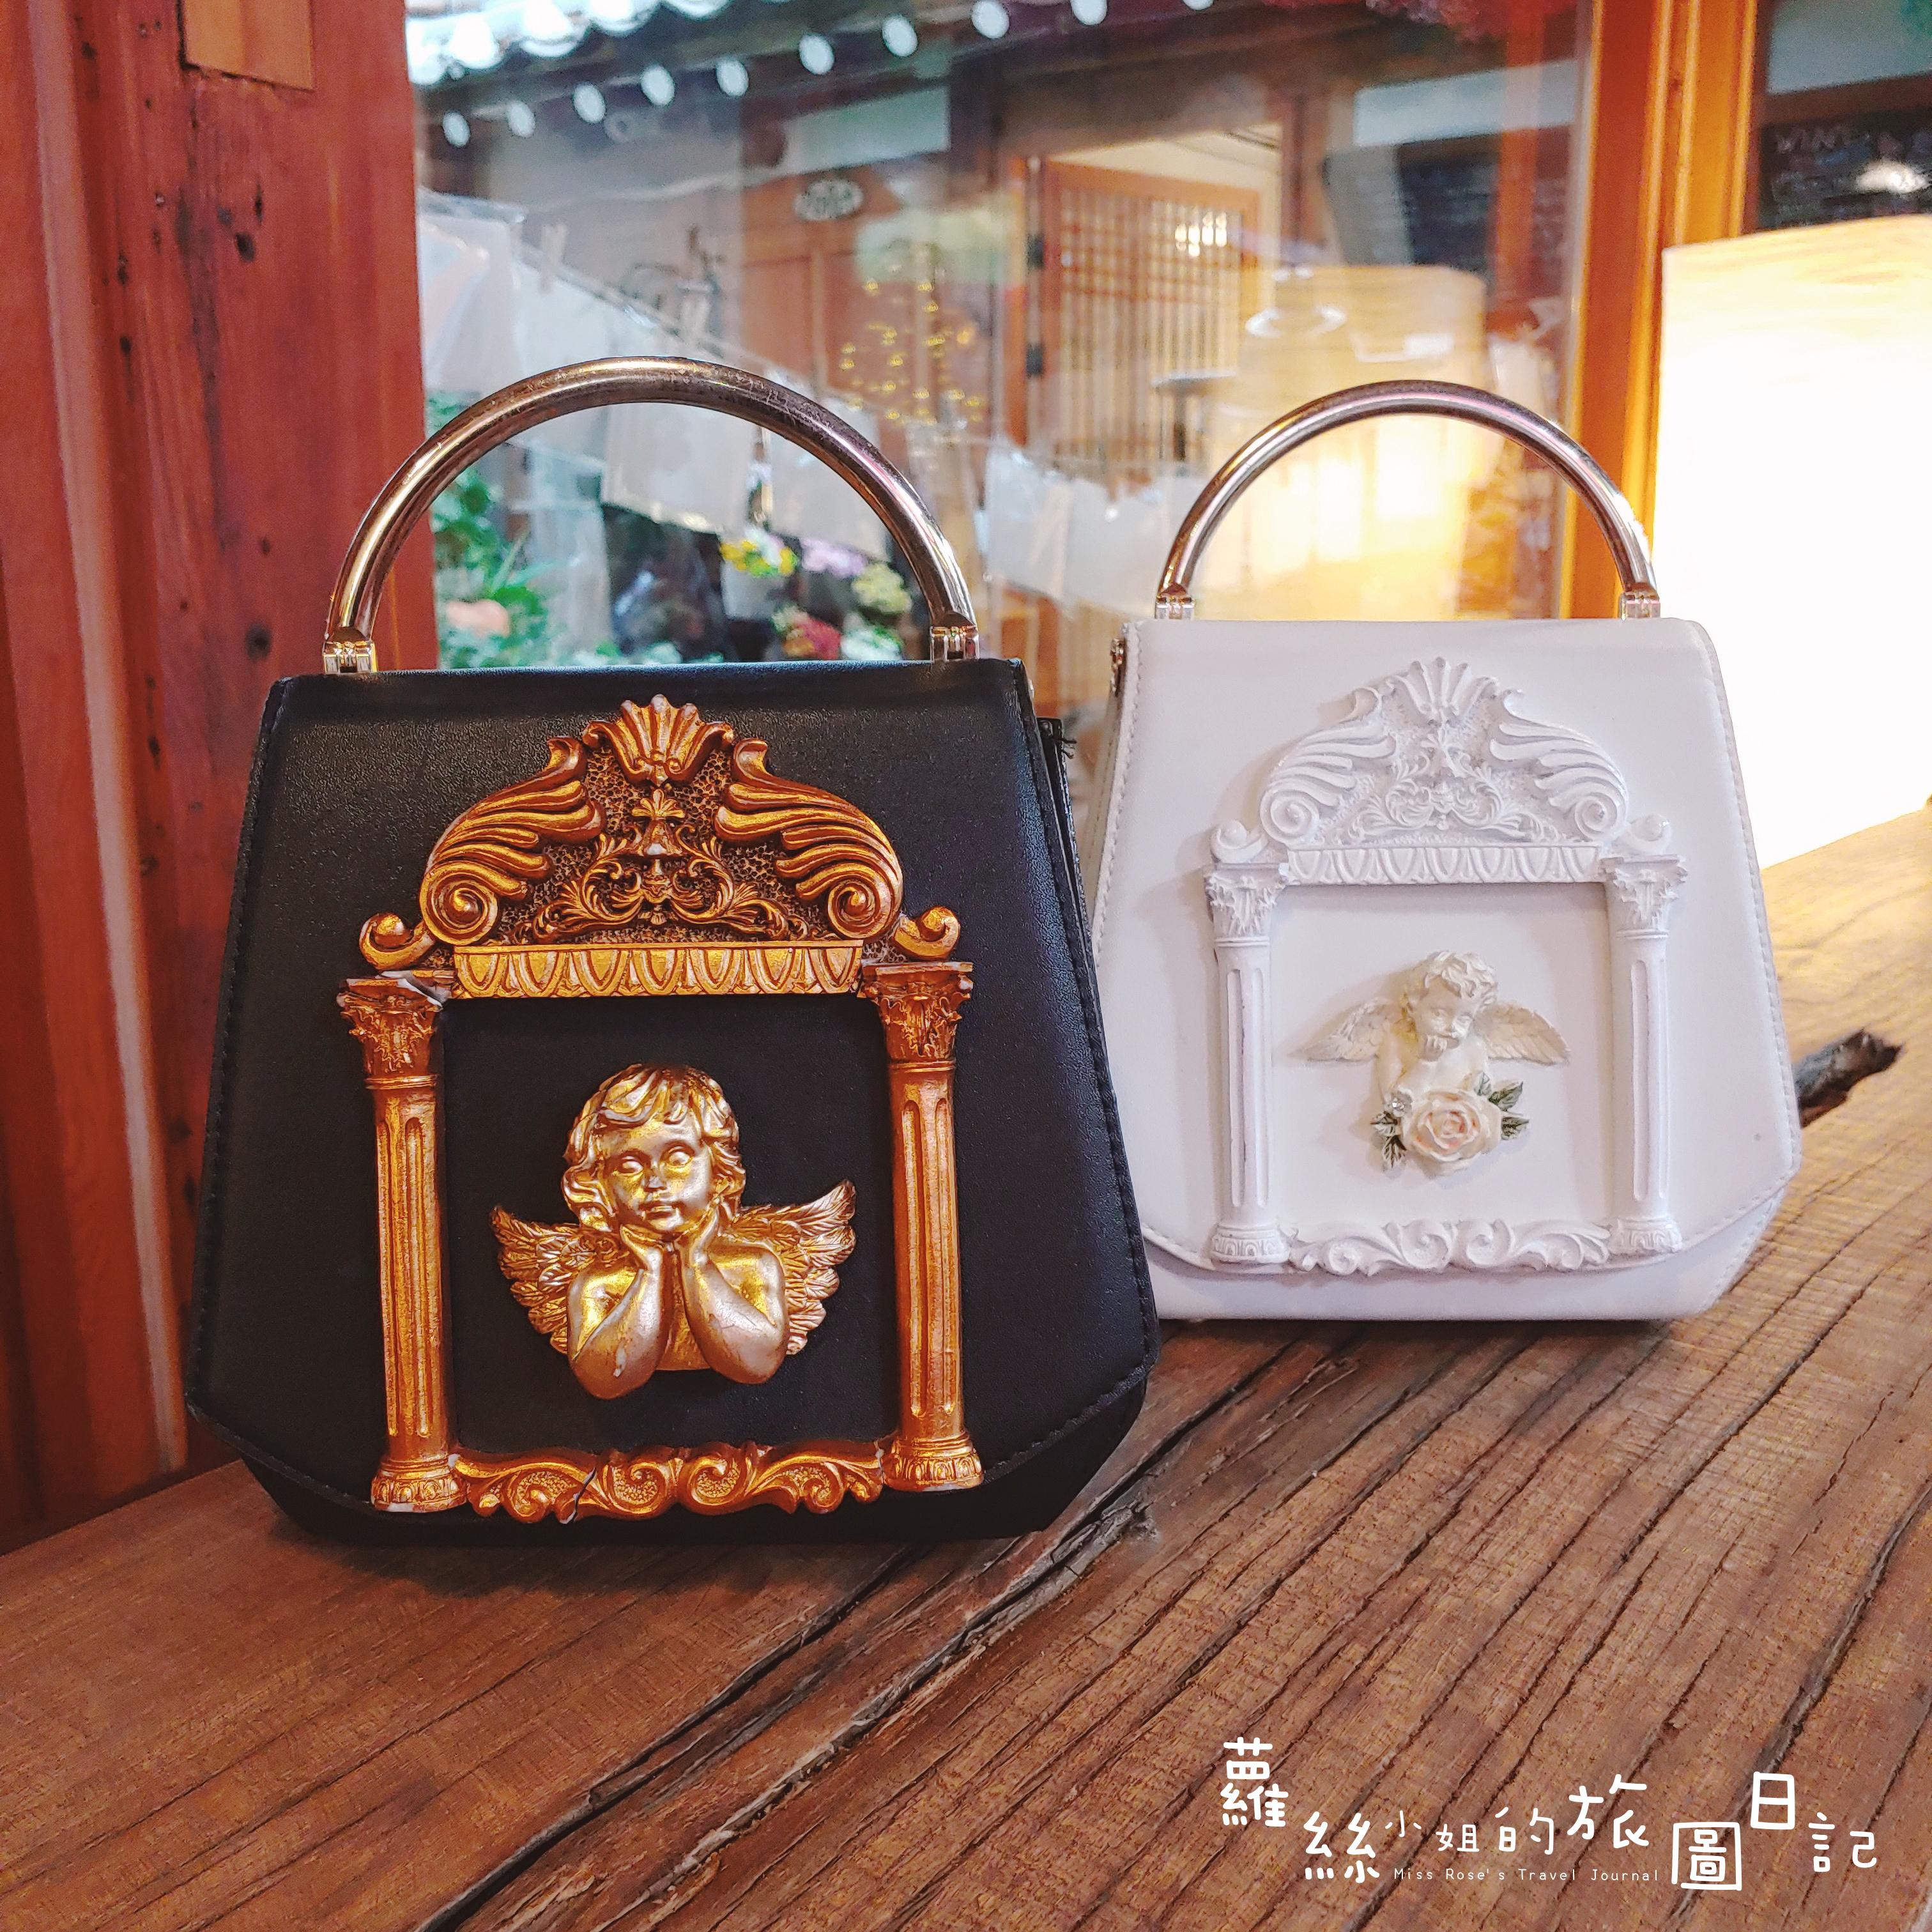 天使手提包真的好美 可以說是因為這個包才選擇京城衣服的XD